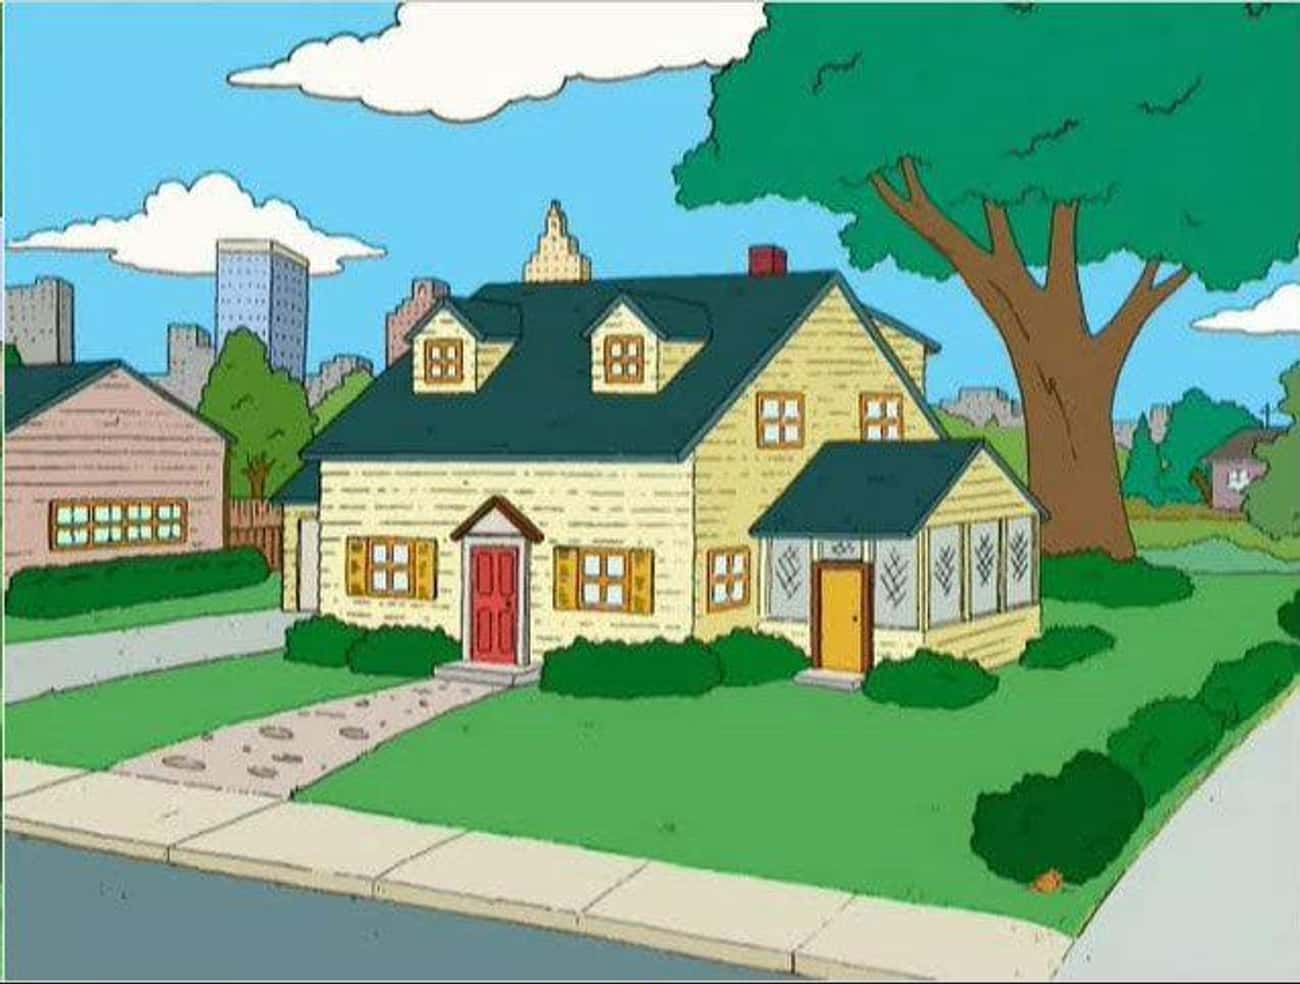 31 Spooner Street - 'Family Guy'